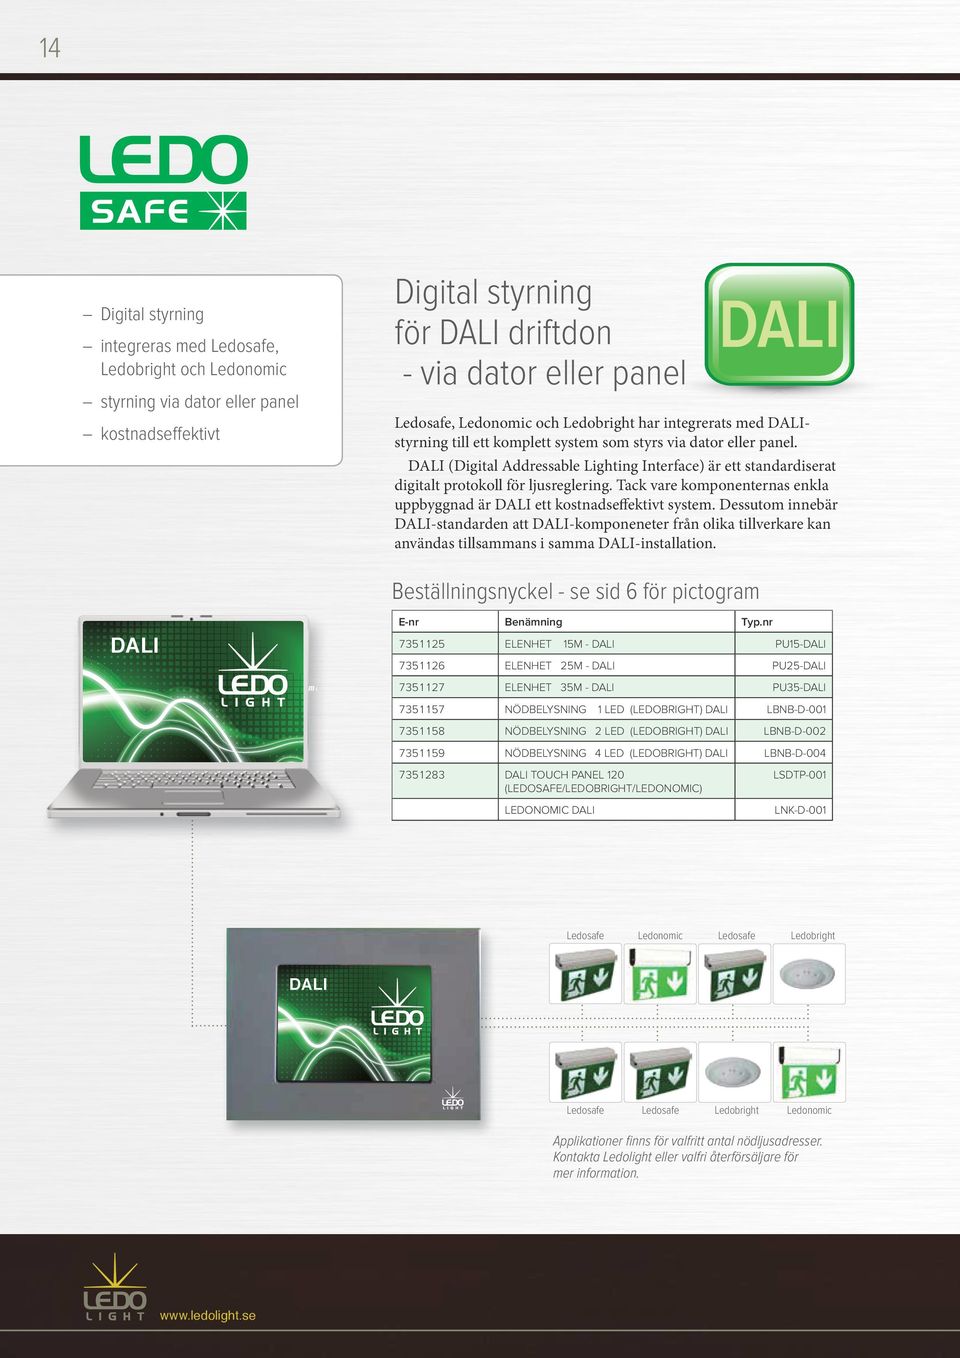 DALI (Digital Addressable Lighting Interface) är ett standardiserat digitalt protokoll för ljusreglering. Tack vare komponenternas enkla uppbyggnad är DALI ett kostnadseffektivt system.